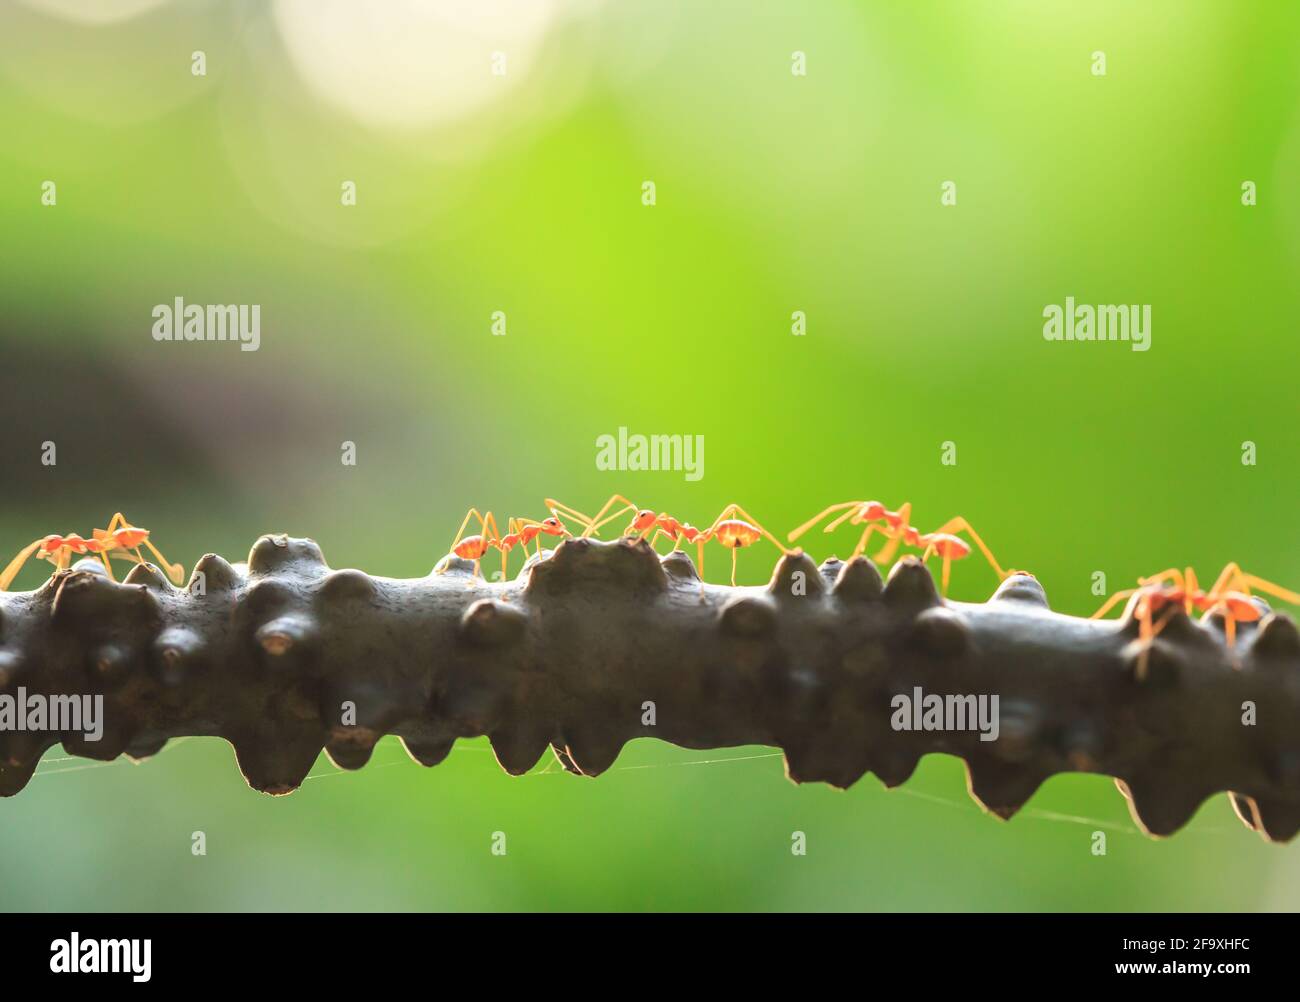 Eine Kolonie grüner Ameisen, die ein Gespräch auf einer Weinrebe führt, Bokeh und grüne Natur verschwimmen im Hintergrund. Nahaufnahme. Stockfoto